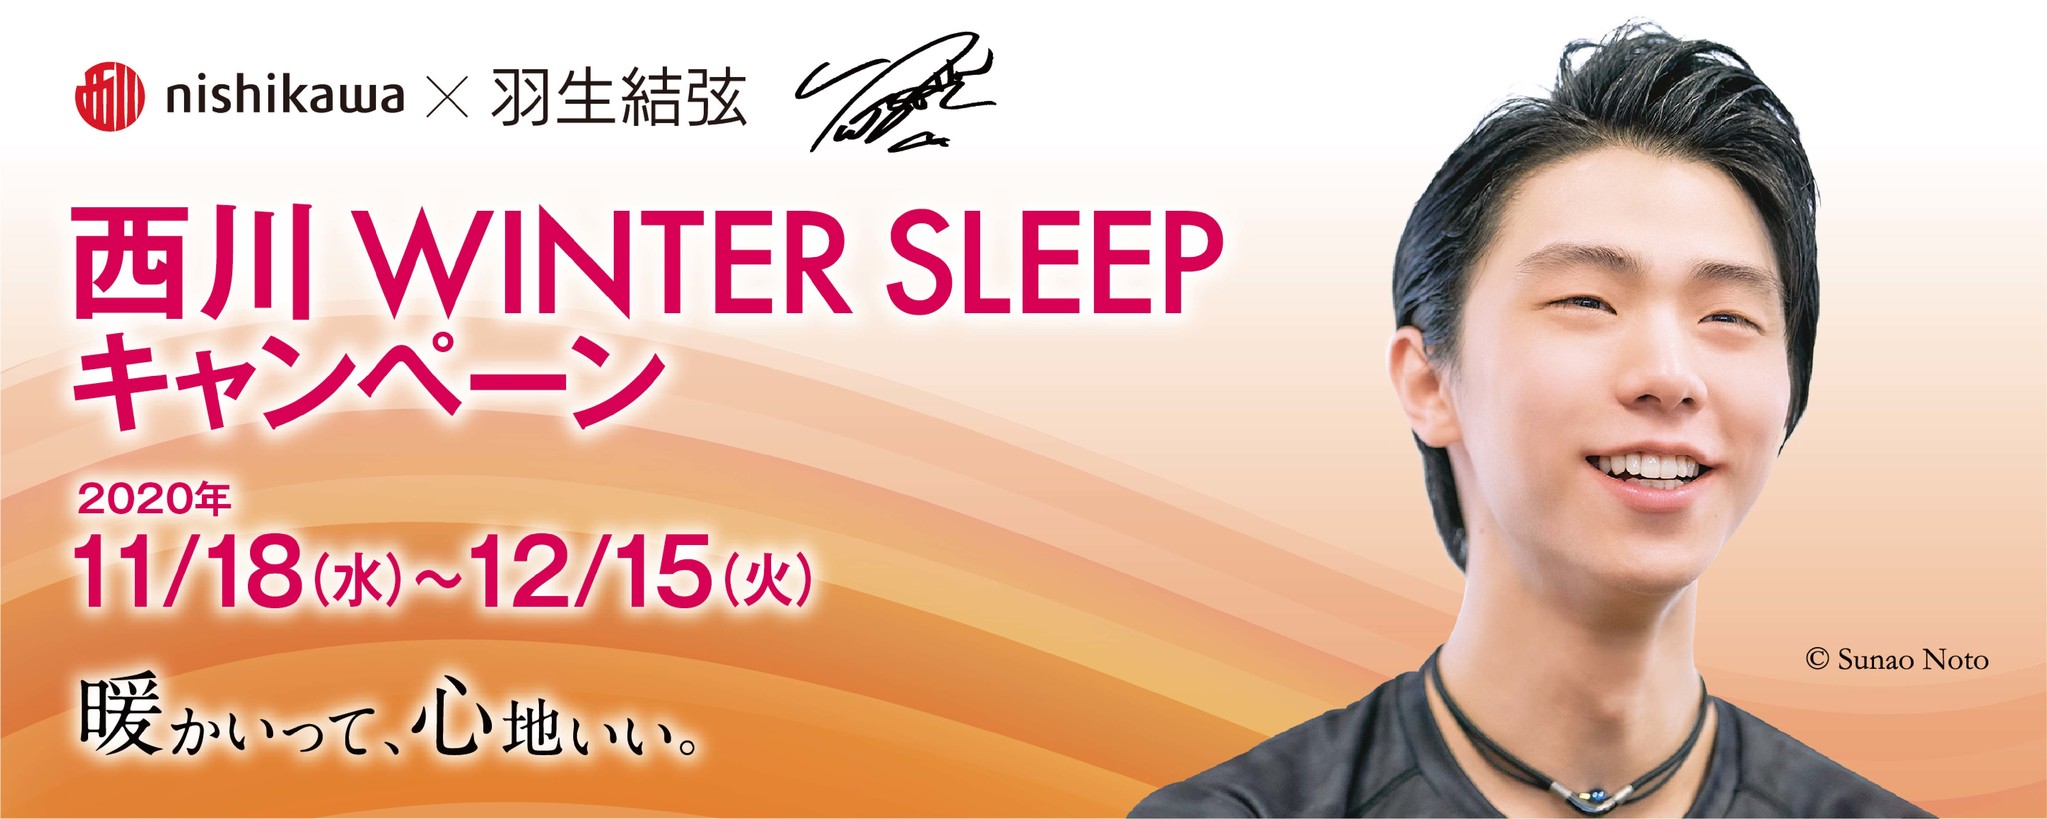 羽生結弦選手を起用した「西川 WINTER SLEEP キャンペーン」を